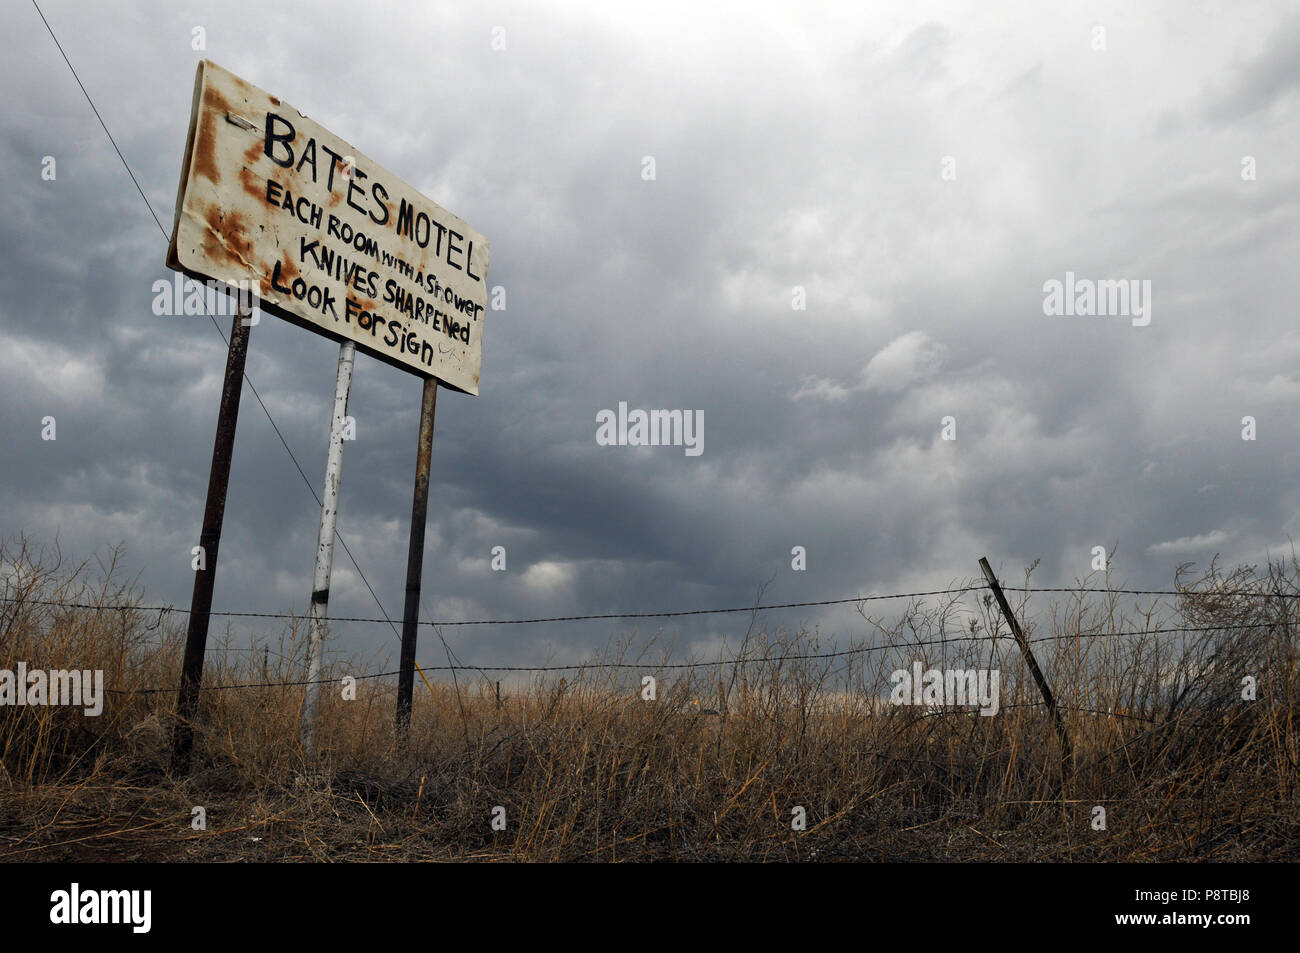 Die Wolken hängen über ein Schild in Amarillo, Texas Werbung das Bates Motel aus Psycho film Fame. Die parodie Zeichen ist ein Teil der Public Art Project. Stockfoto